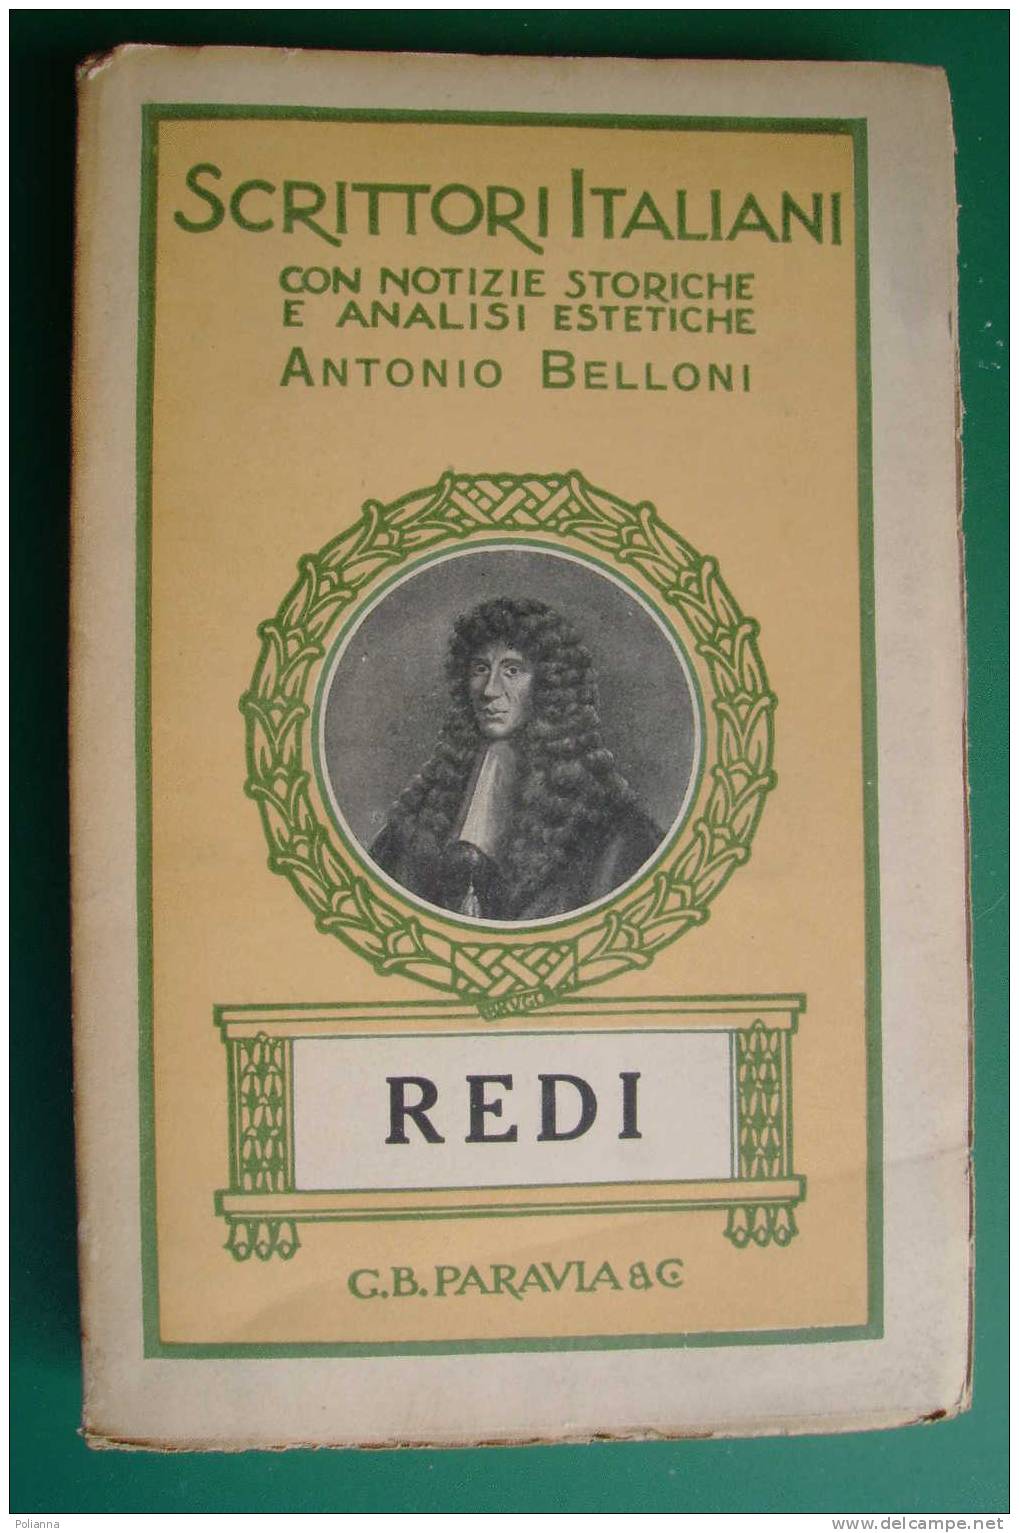 PDD/34 Scrittori Italiani - Antonio Belloni - FRANCESCO REDI  Paravia 1931 - Oud